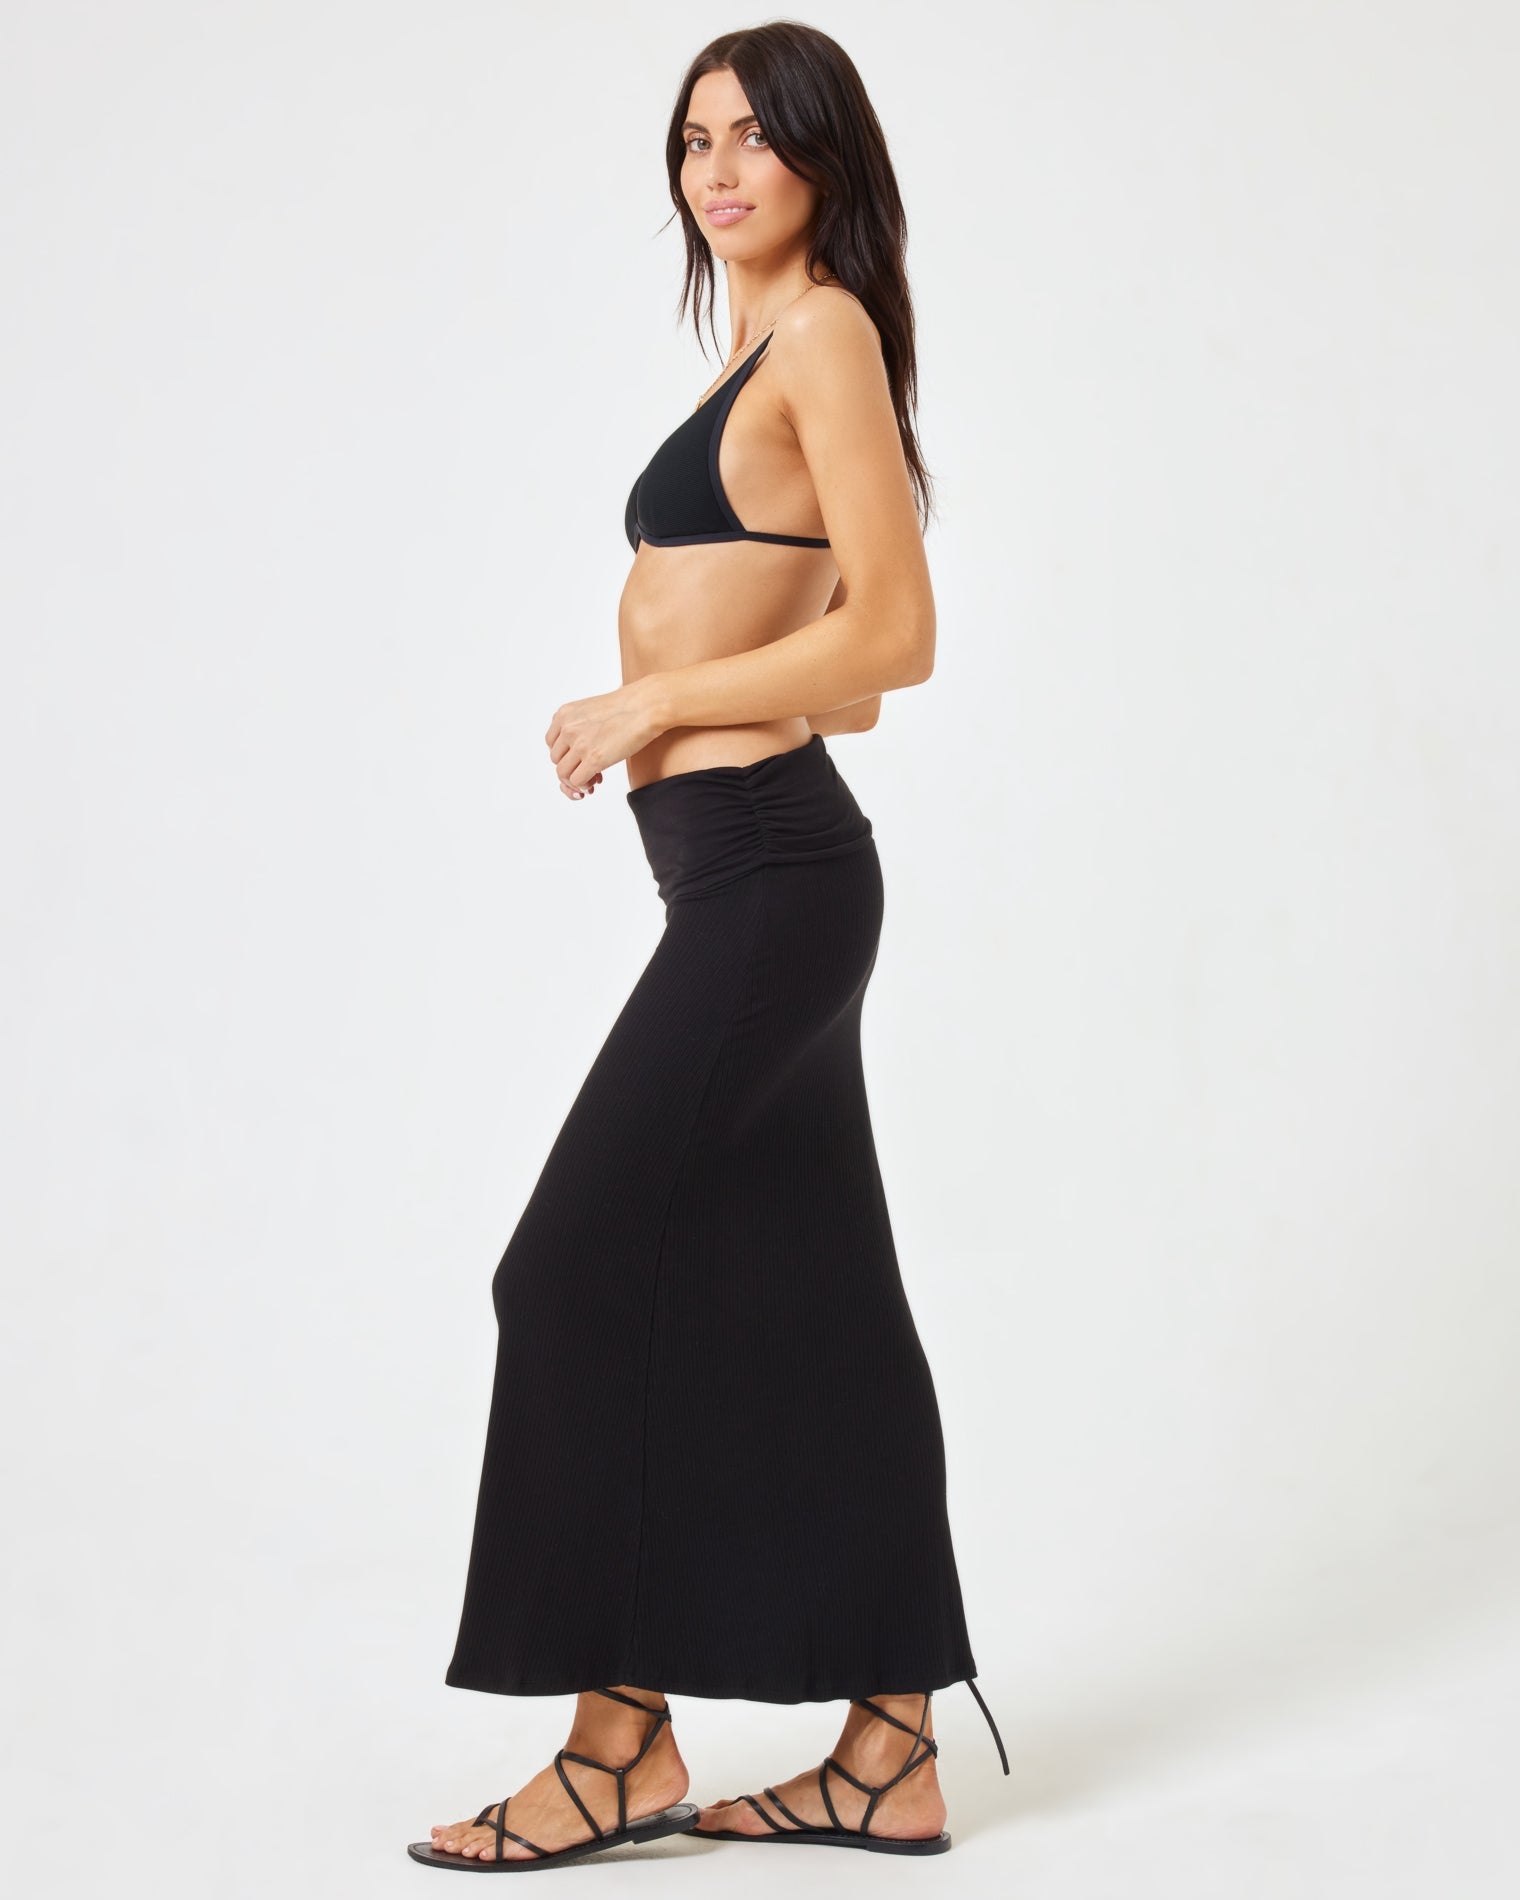 Manaia Dress Black | Model: Diana (size: S)